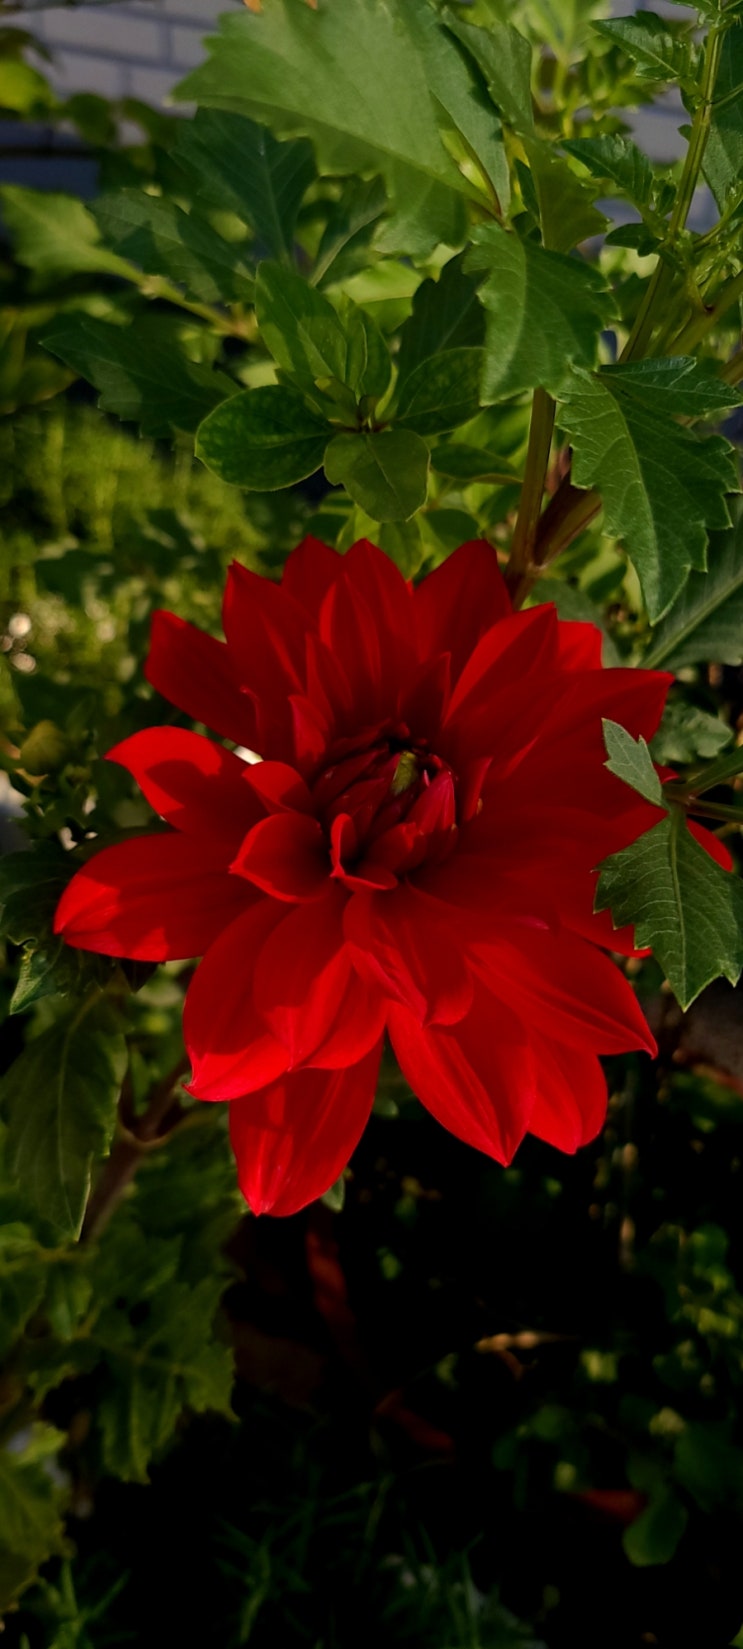 이름모를 붉은 꽃